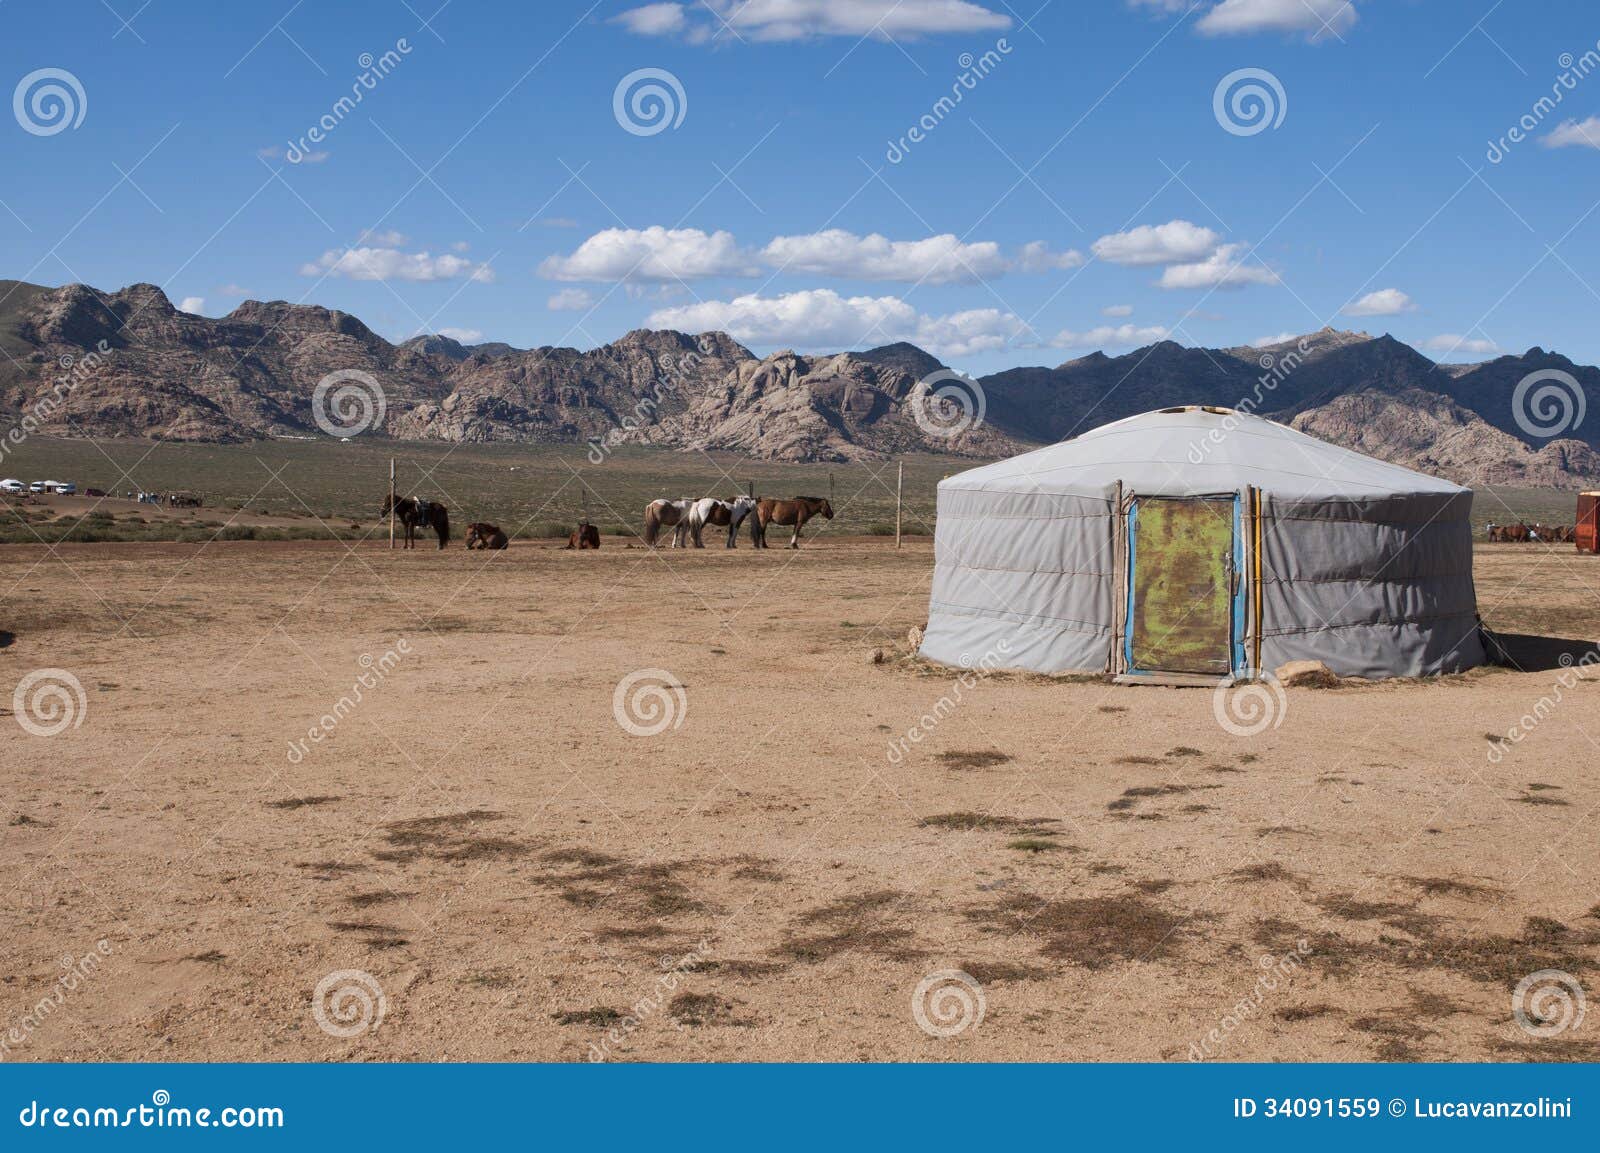 nomadic yurt in desert